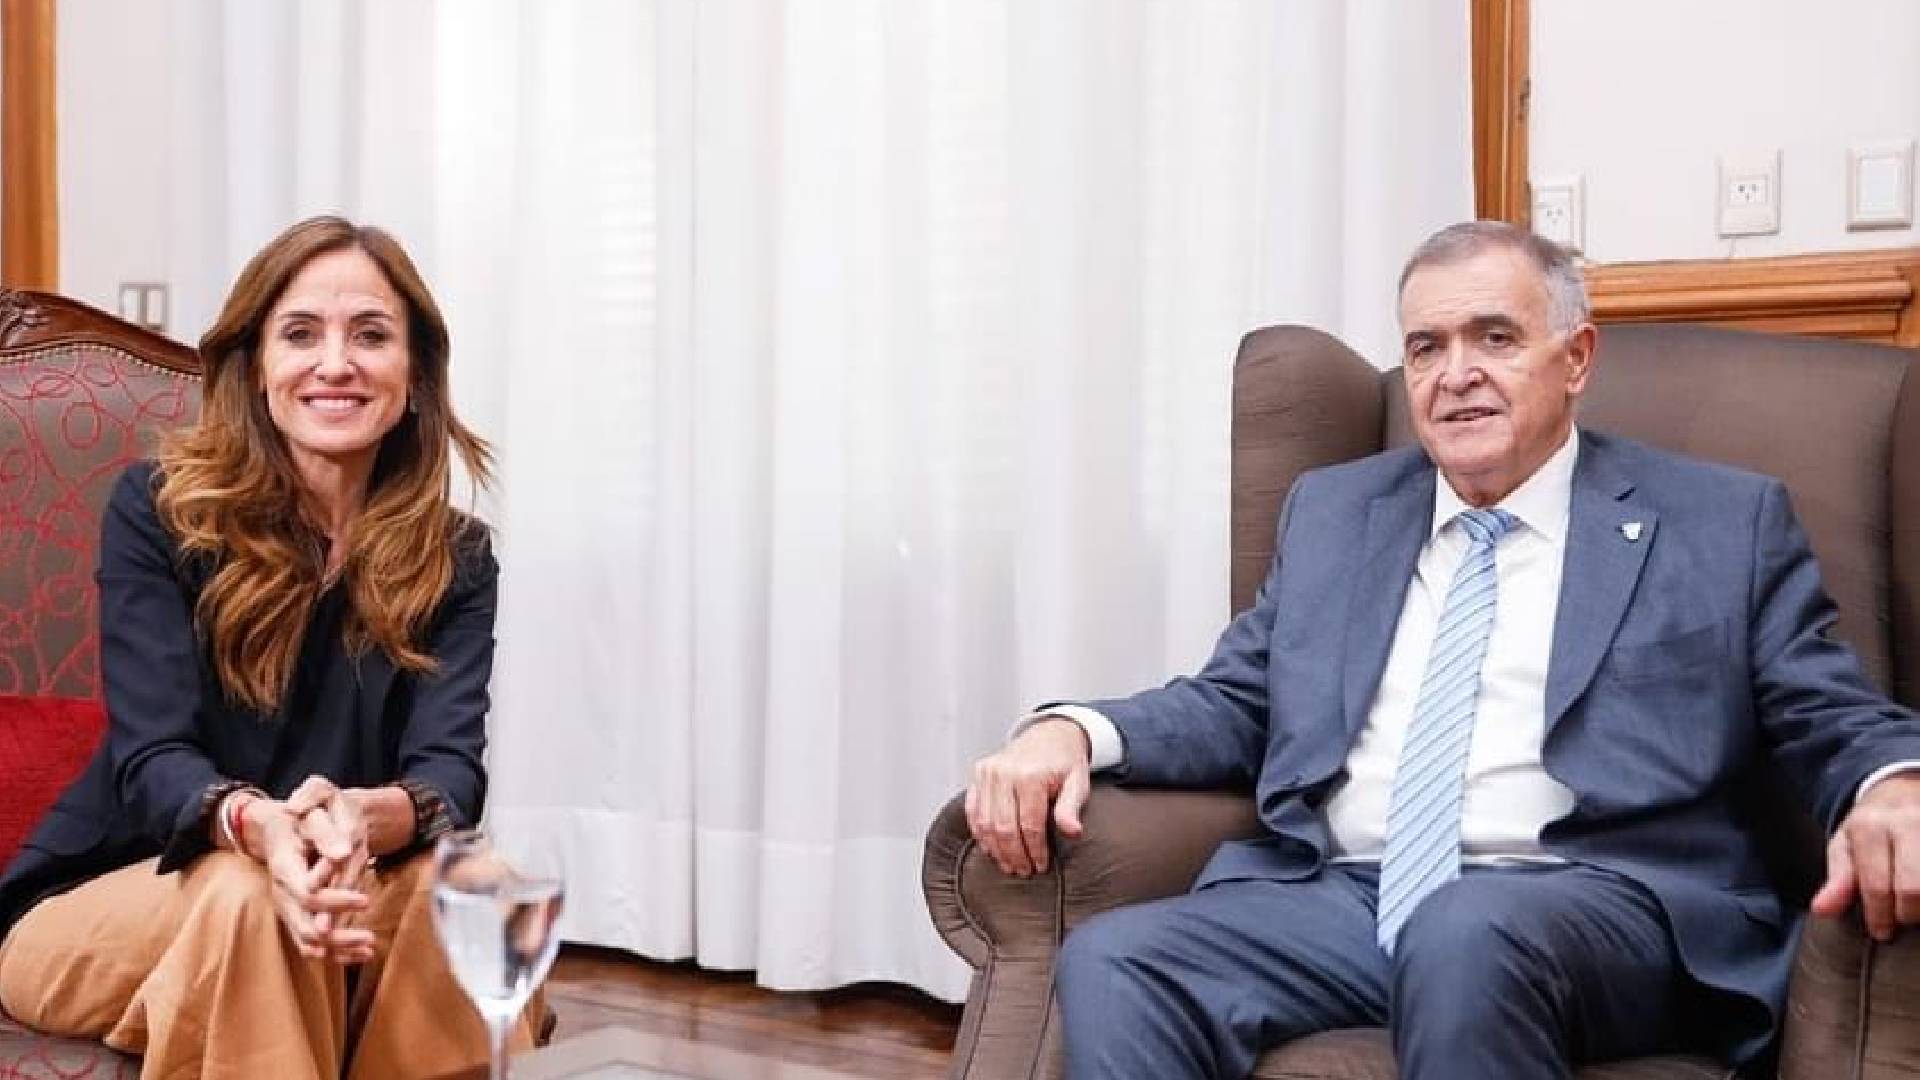 La ministra de Desarrollo Social de la Nación, Victoria Tolosa Paz sentada junto al gobernador de Tucumán, Osvaldo Jaldo.